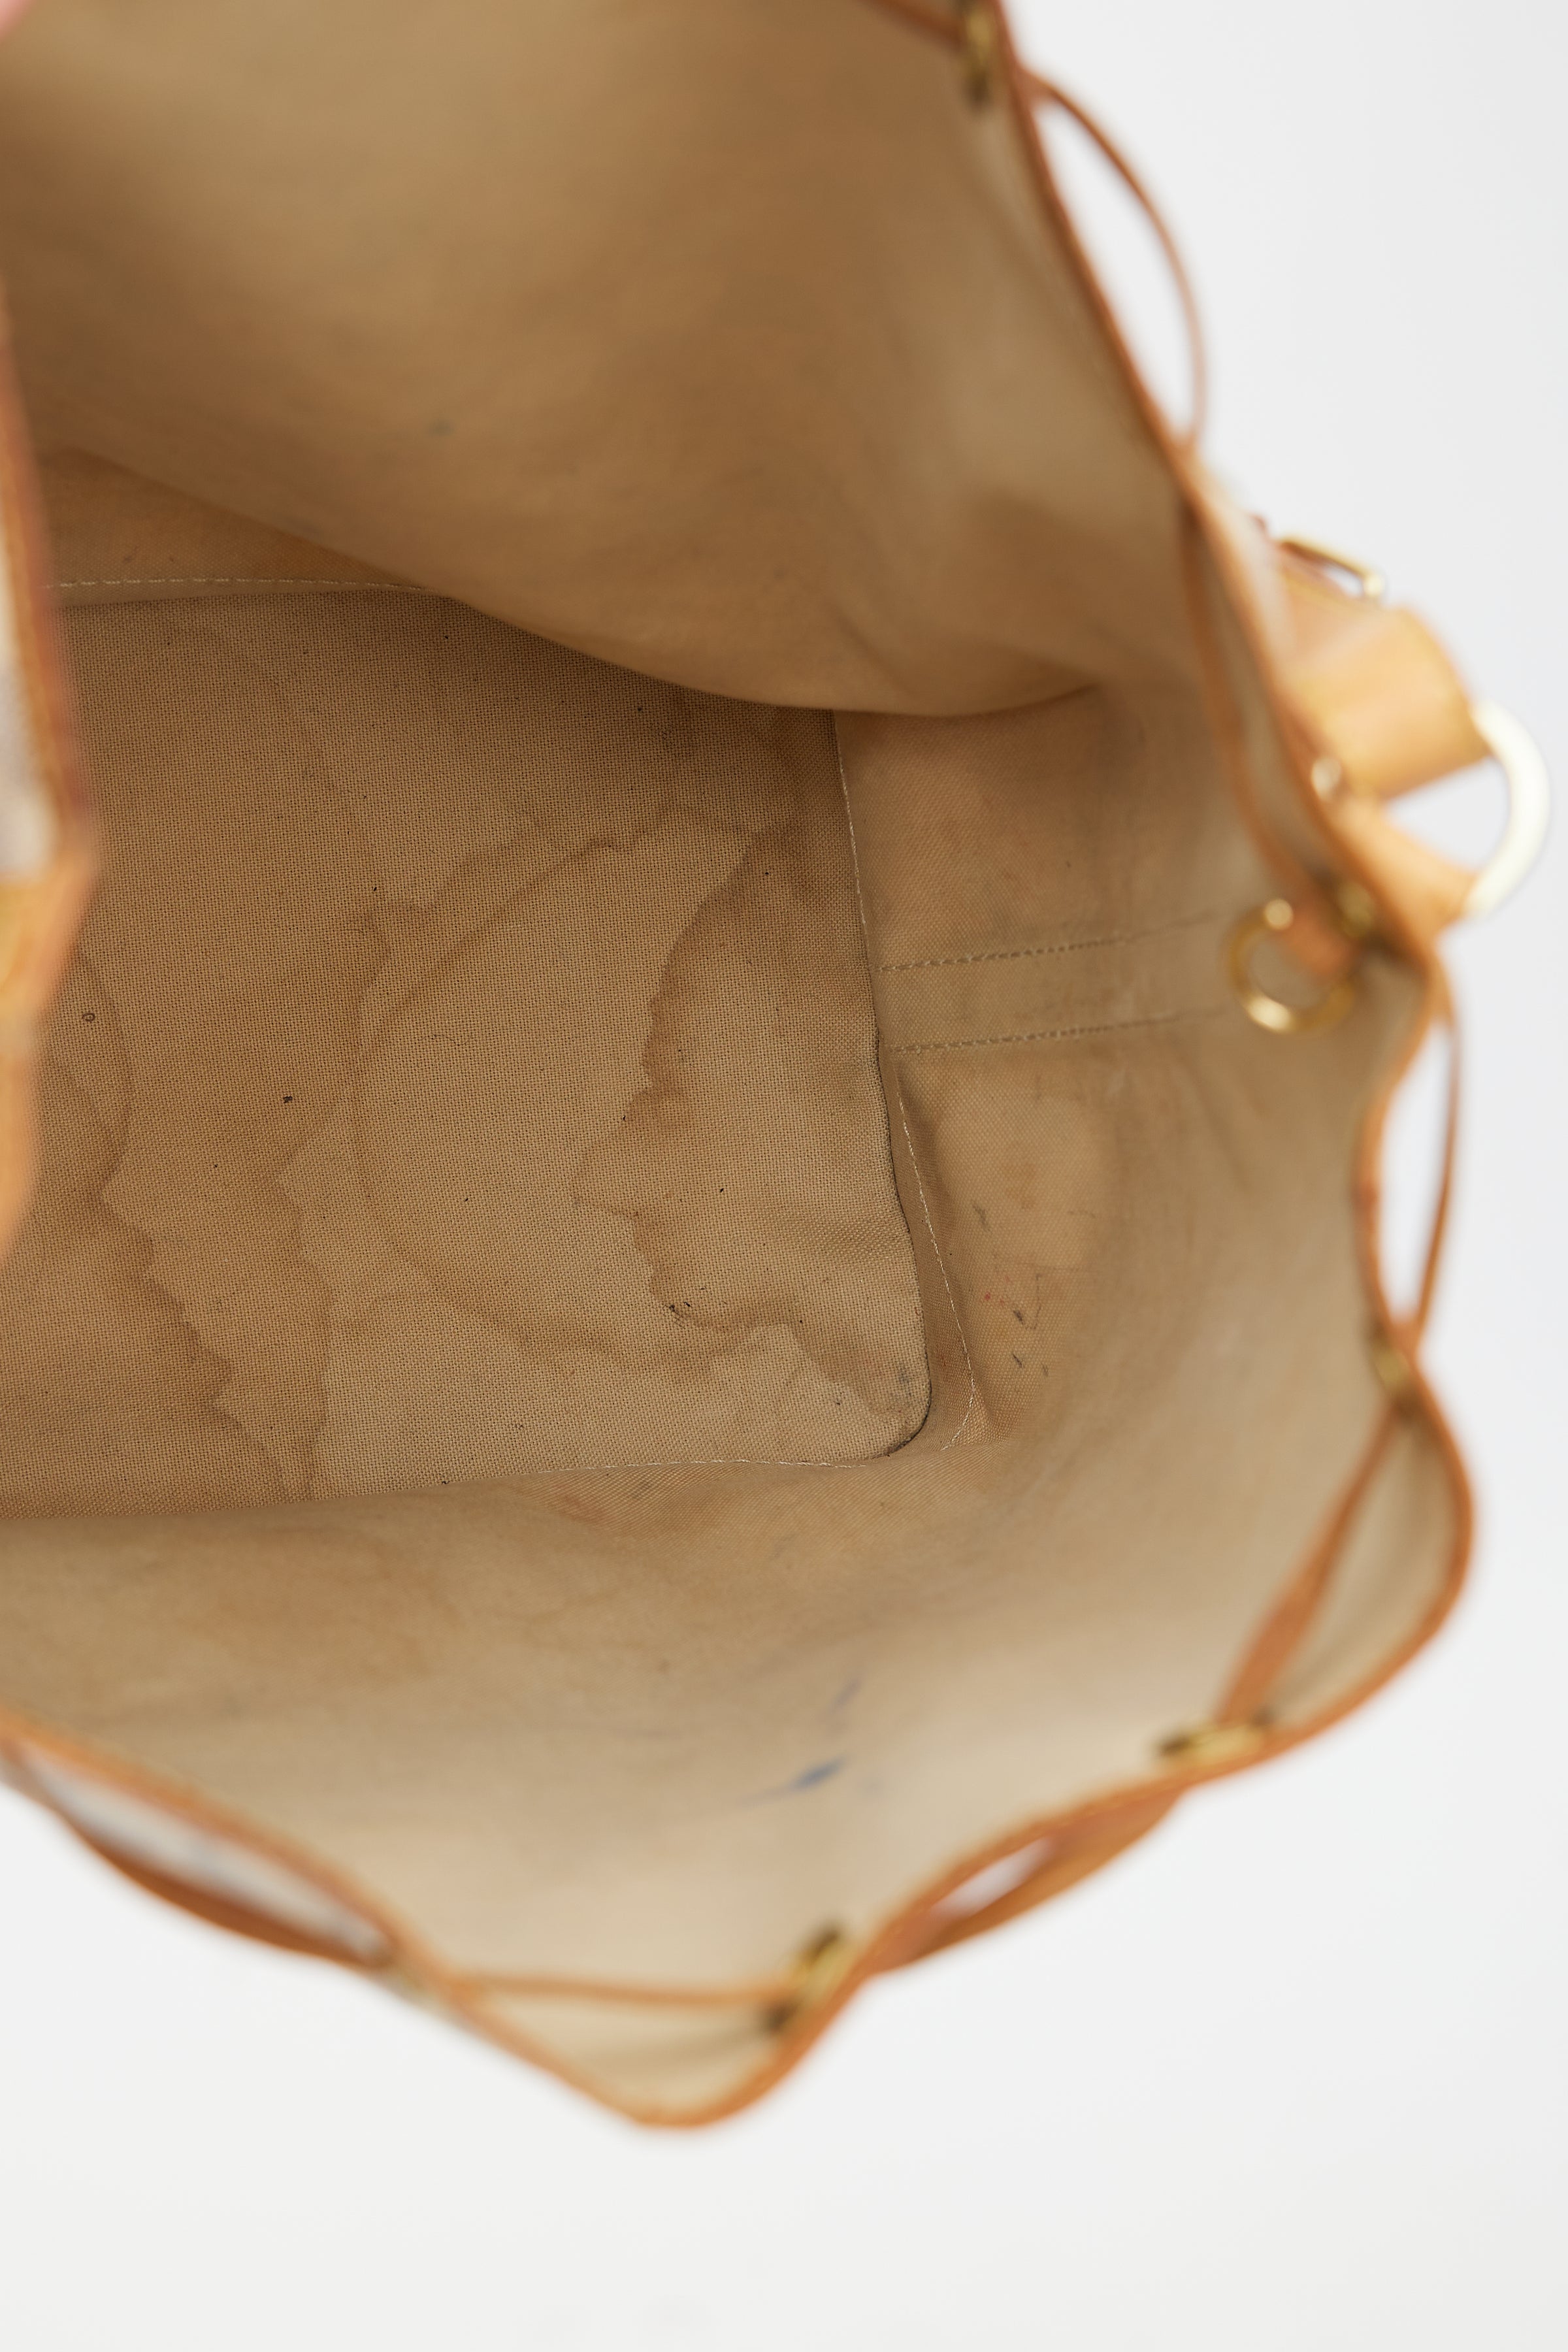 Auth Louis Vuitton Damier Azur Noe Shoulder bag 1D280160n